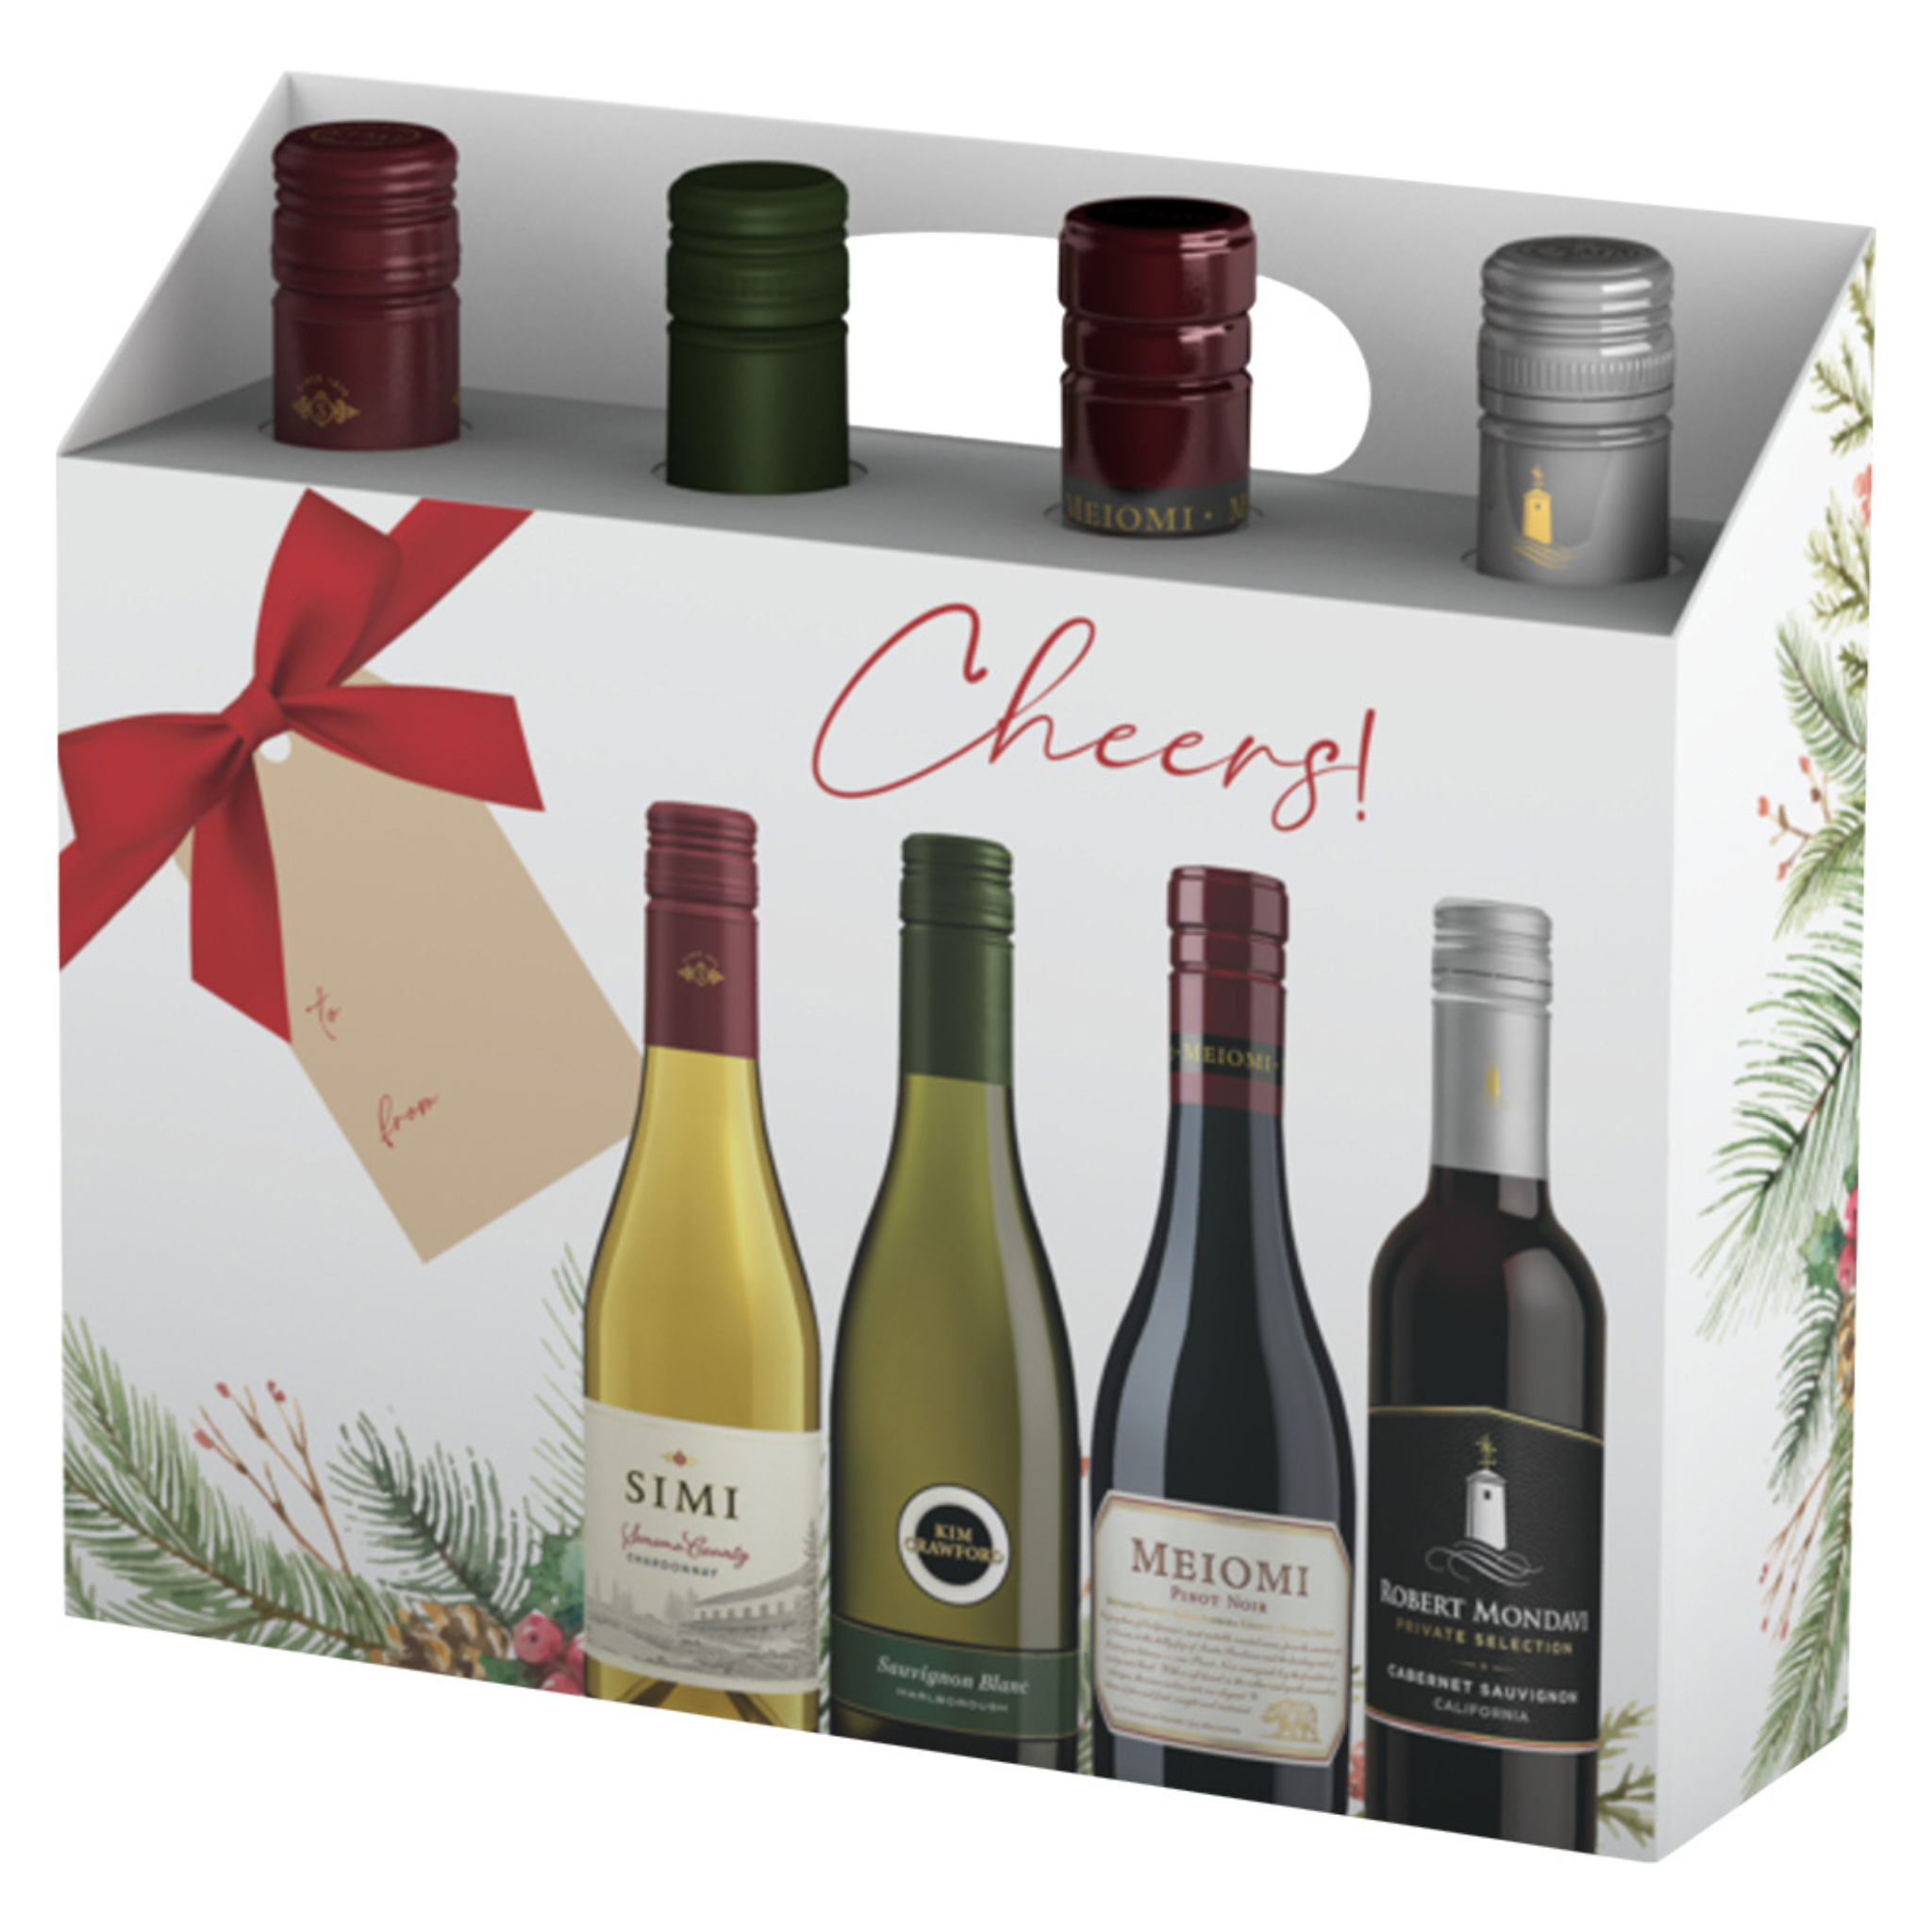 Constellation Brands Wine Gift Set – Grand Wine Cellar